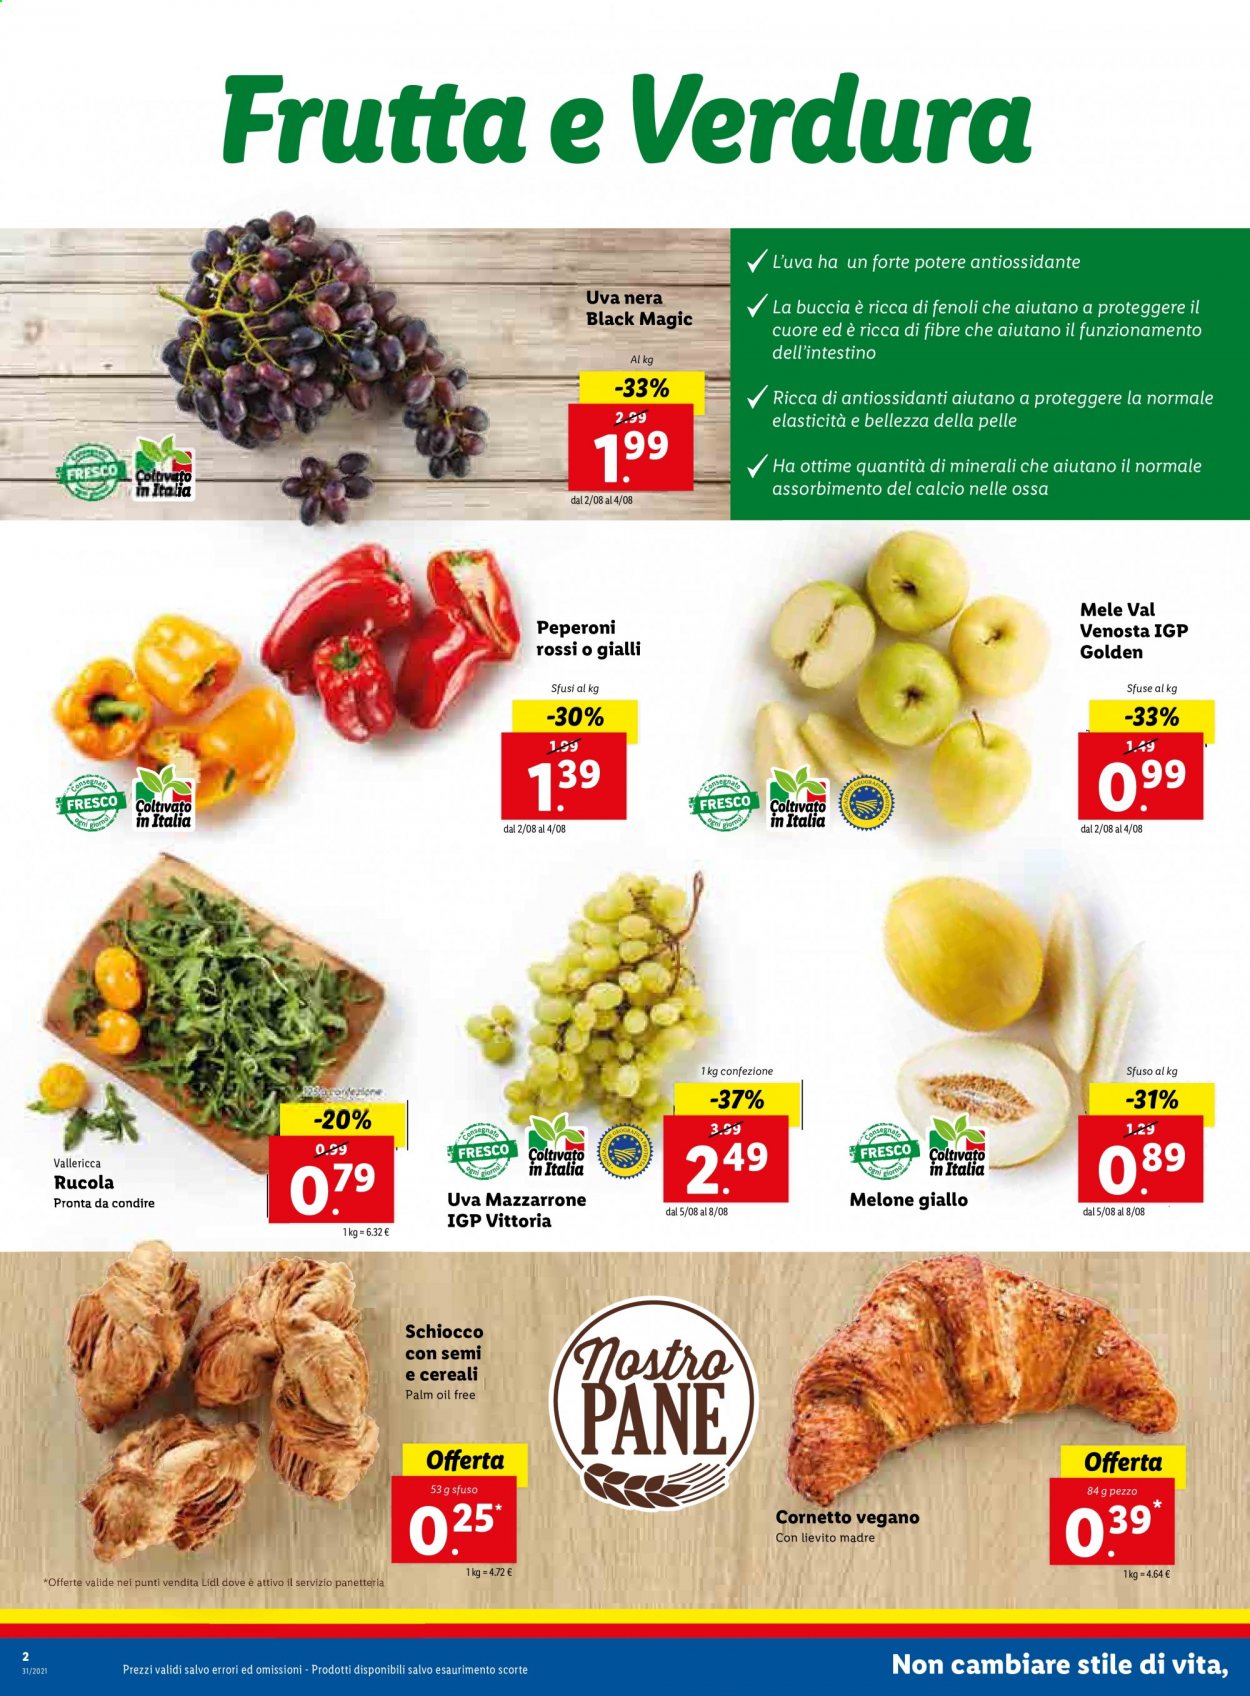 thumbnail - Volantino Lidl - 2/8/2021 - 8/8/2021 - Prodotti in offerta - pane, Cornetto, rucola, peperoni, uva, mele, melone, melone giallo. Pagina 2.